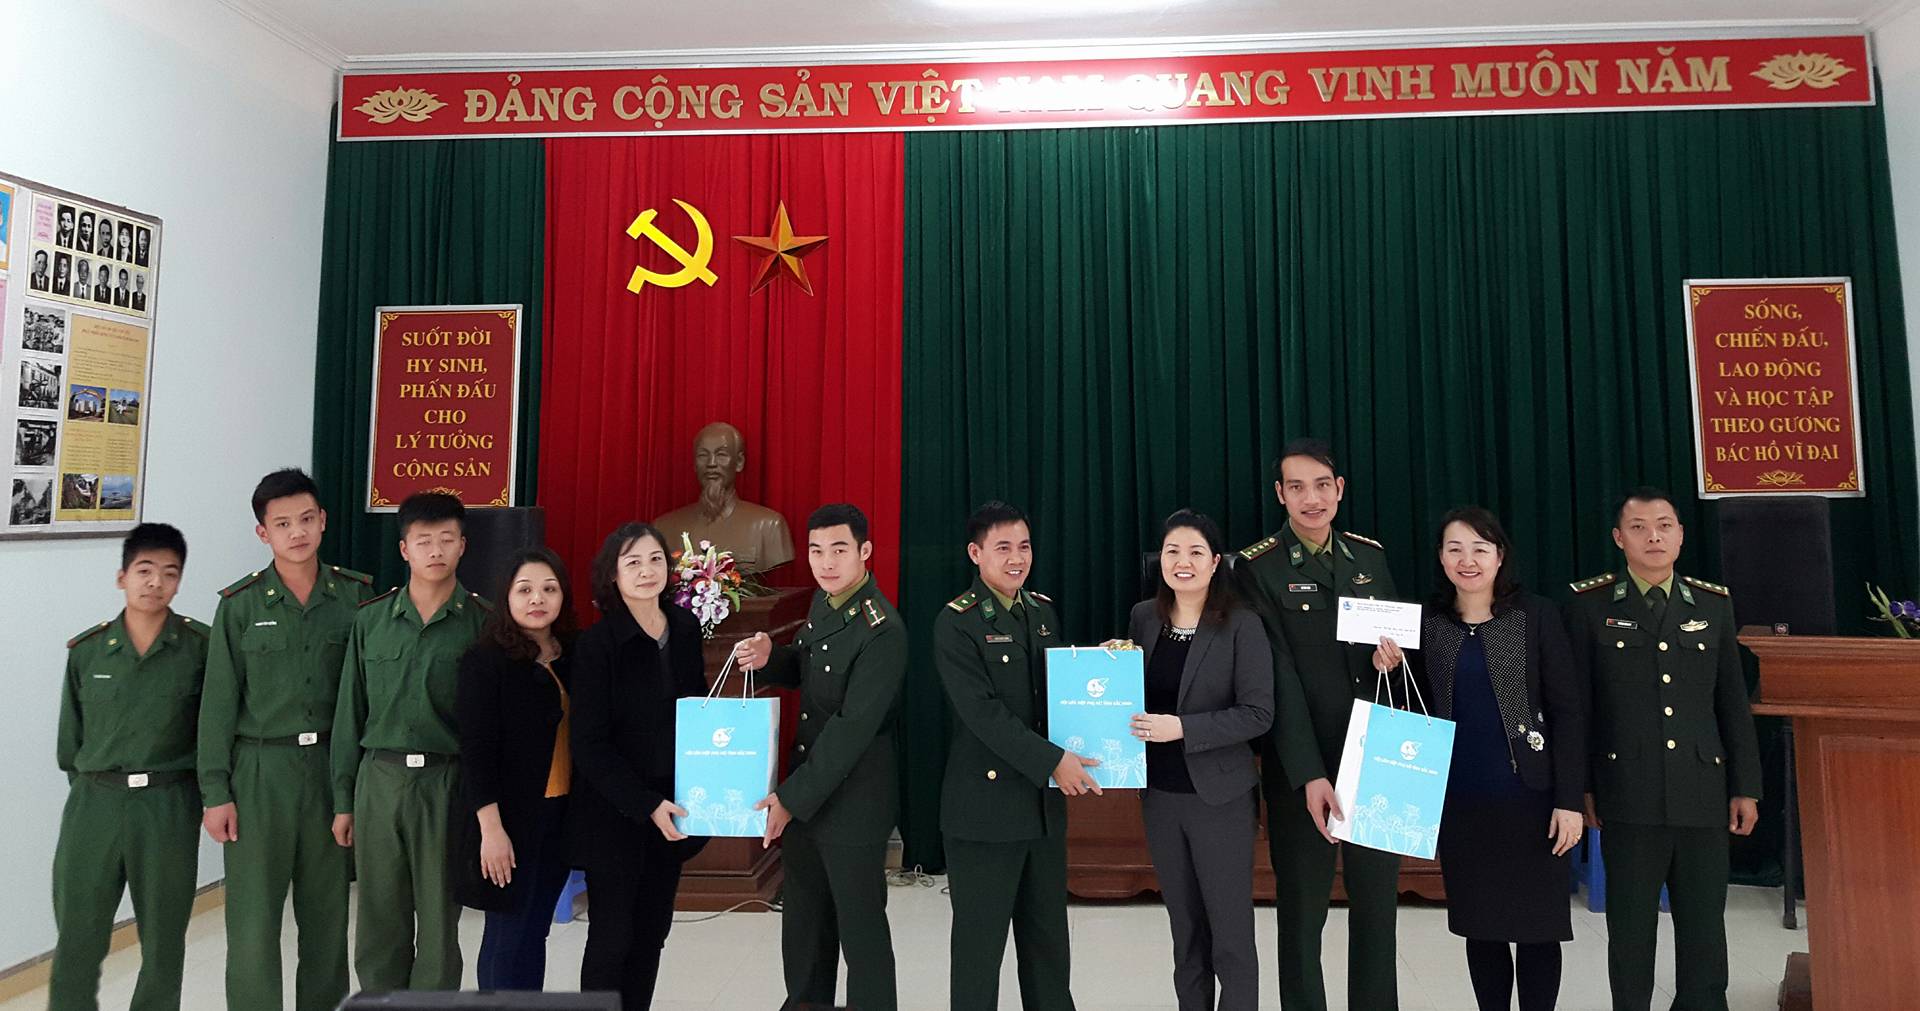 2.Hội LHPN tỉnh Bắc Ninh thăm đồn Biên phòng Chi Ma